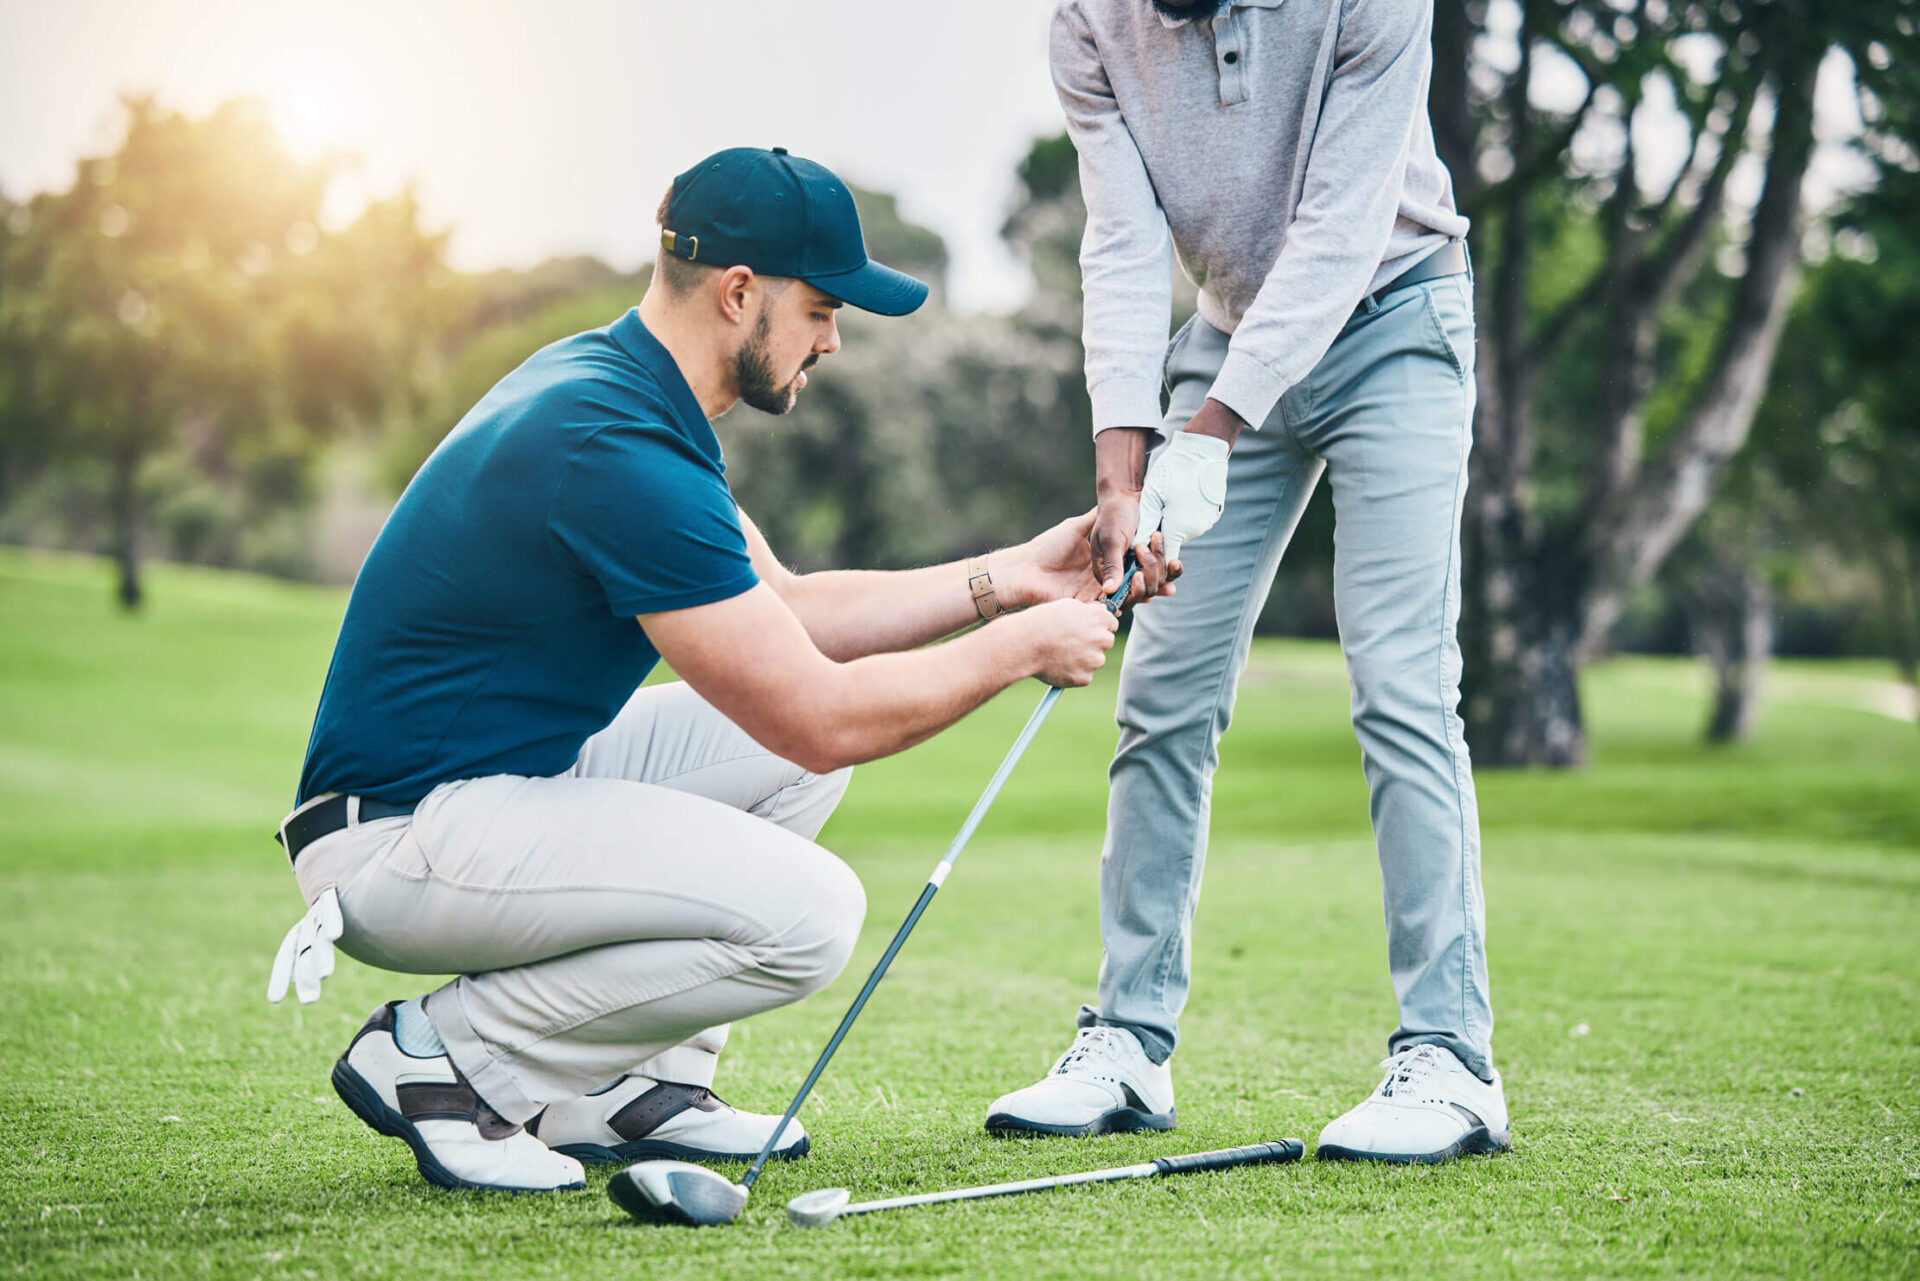 Golf Instructor teaching a grip